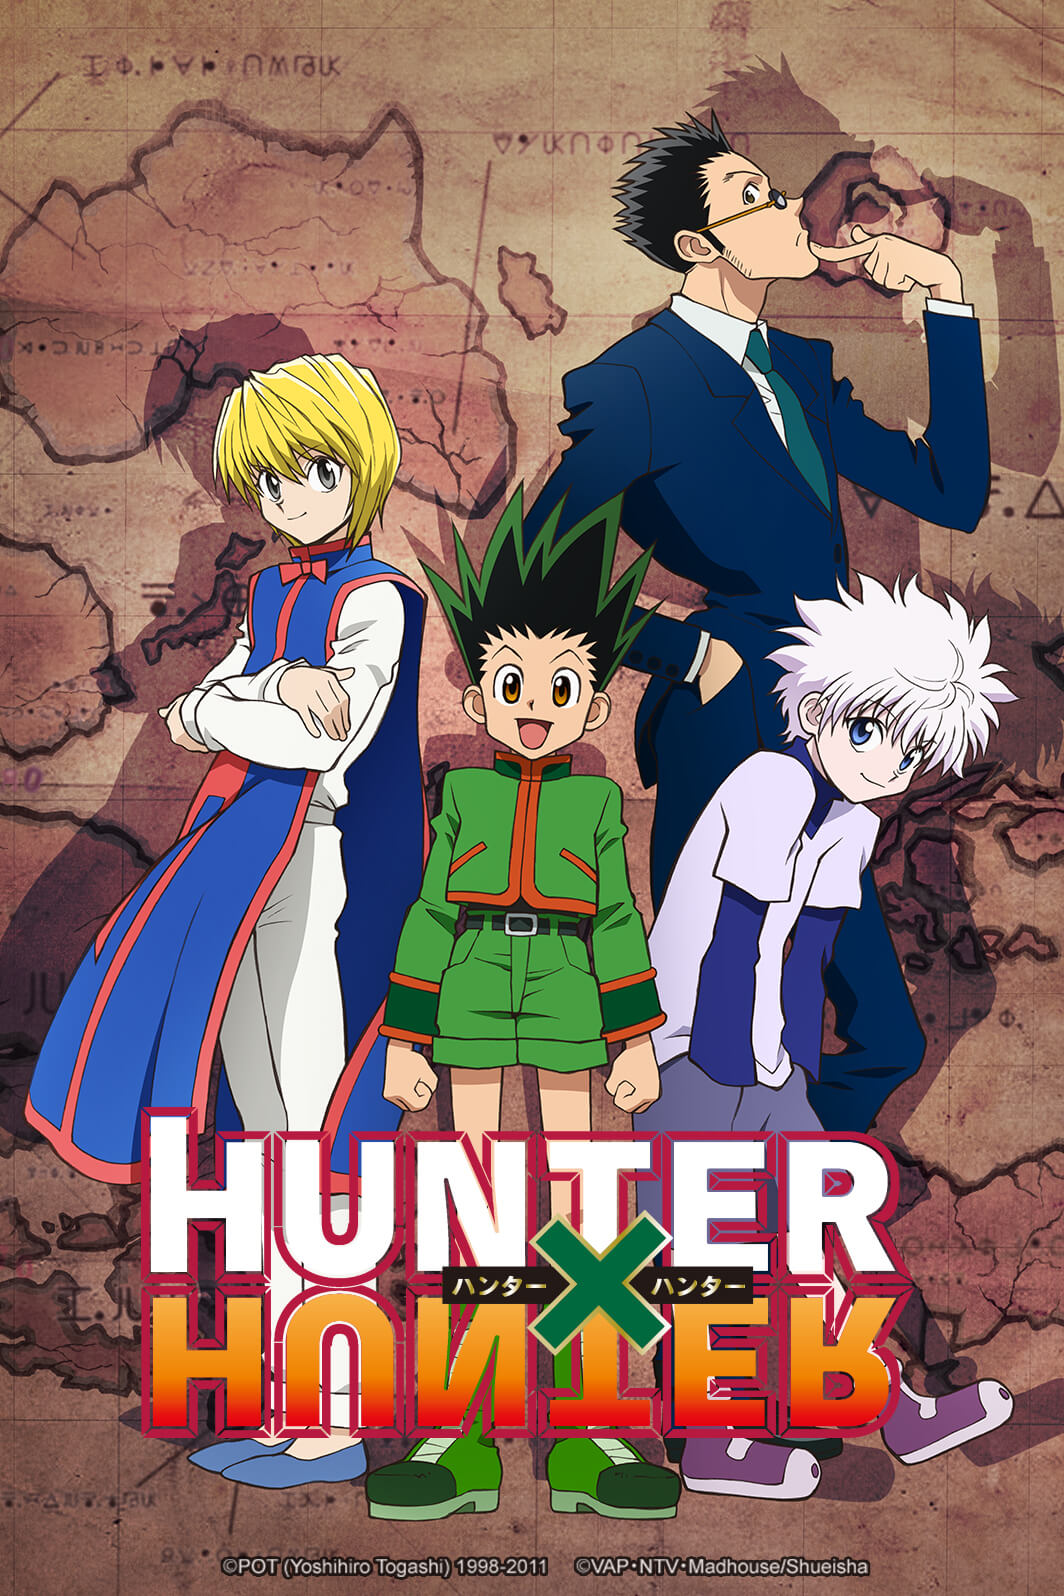 WDN - World Dubbing News on X: 🎣 As aventuras de Gon e seus amigos  continuam! Os episodios 27-38 do anime 'Hunter x Hunter' estão disponível  na Netflix USA com dublagem em